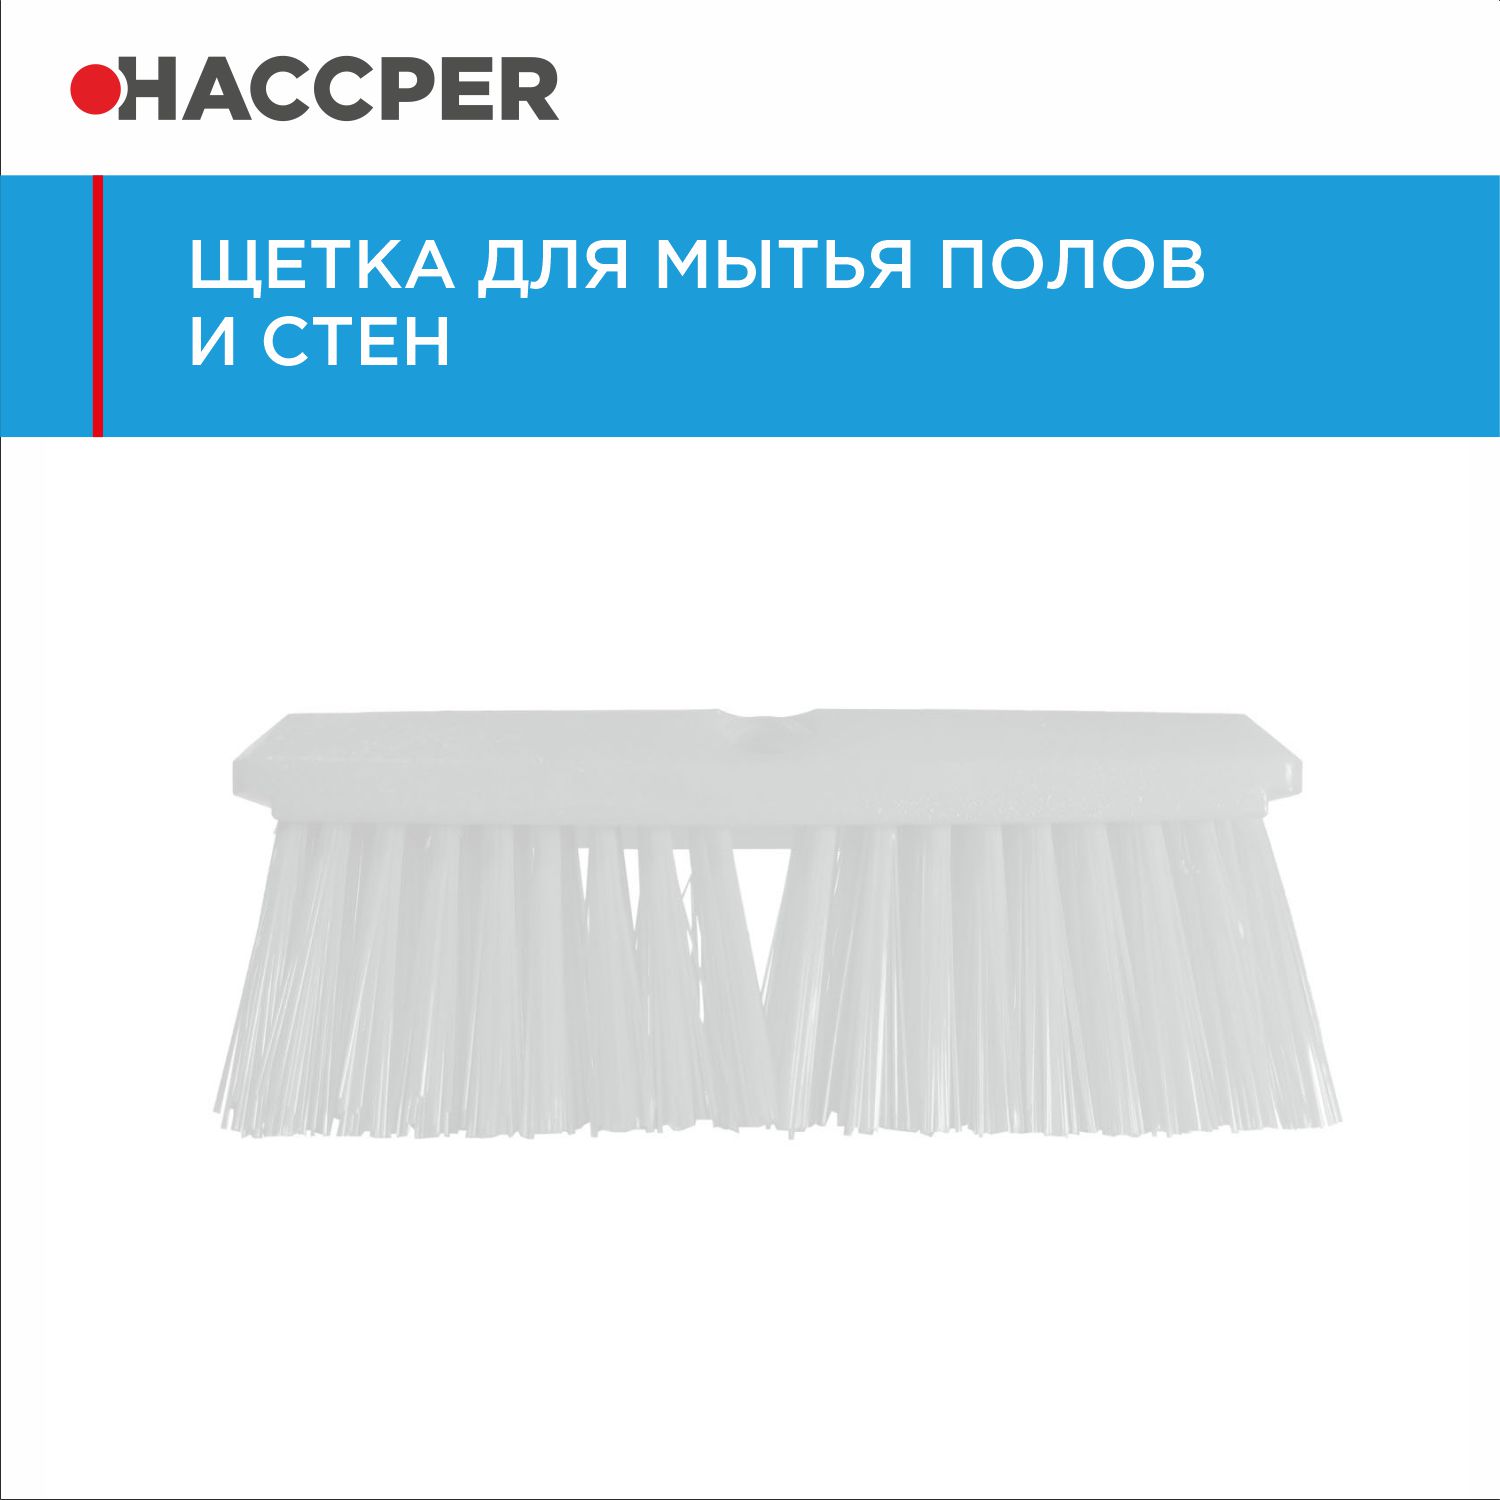 Щетка HACCPER для мытья полов и стен, жесткая, 254 мм, белая